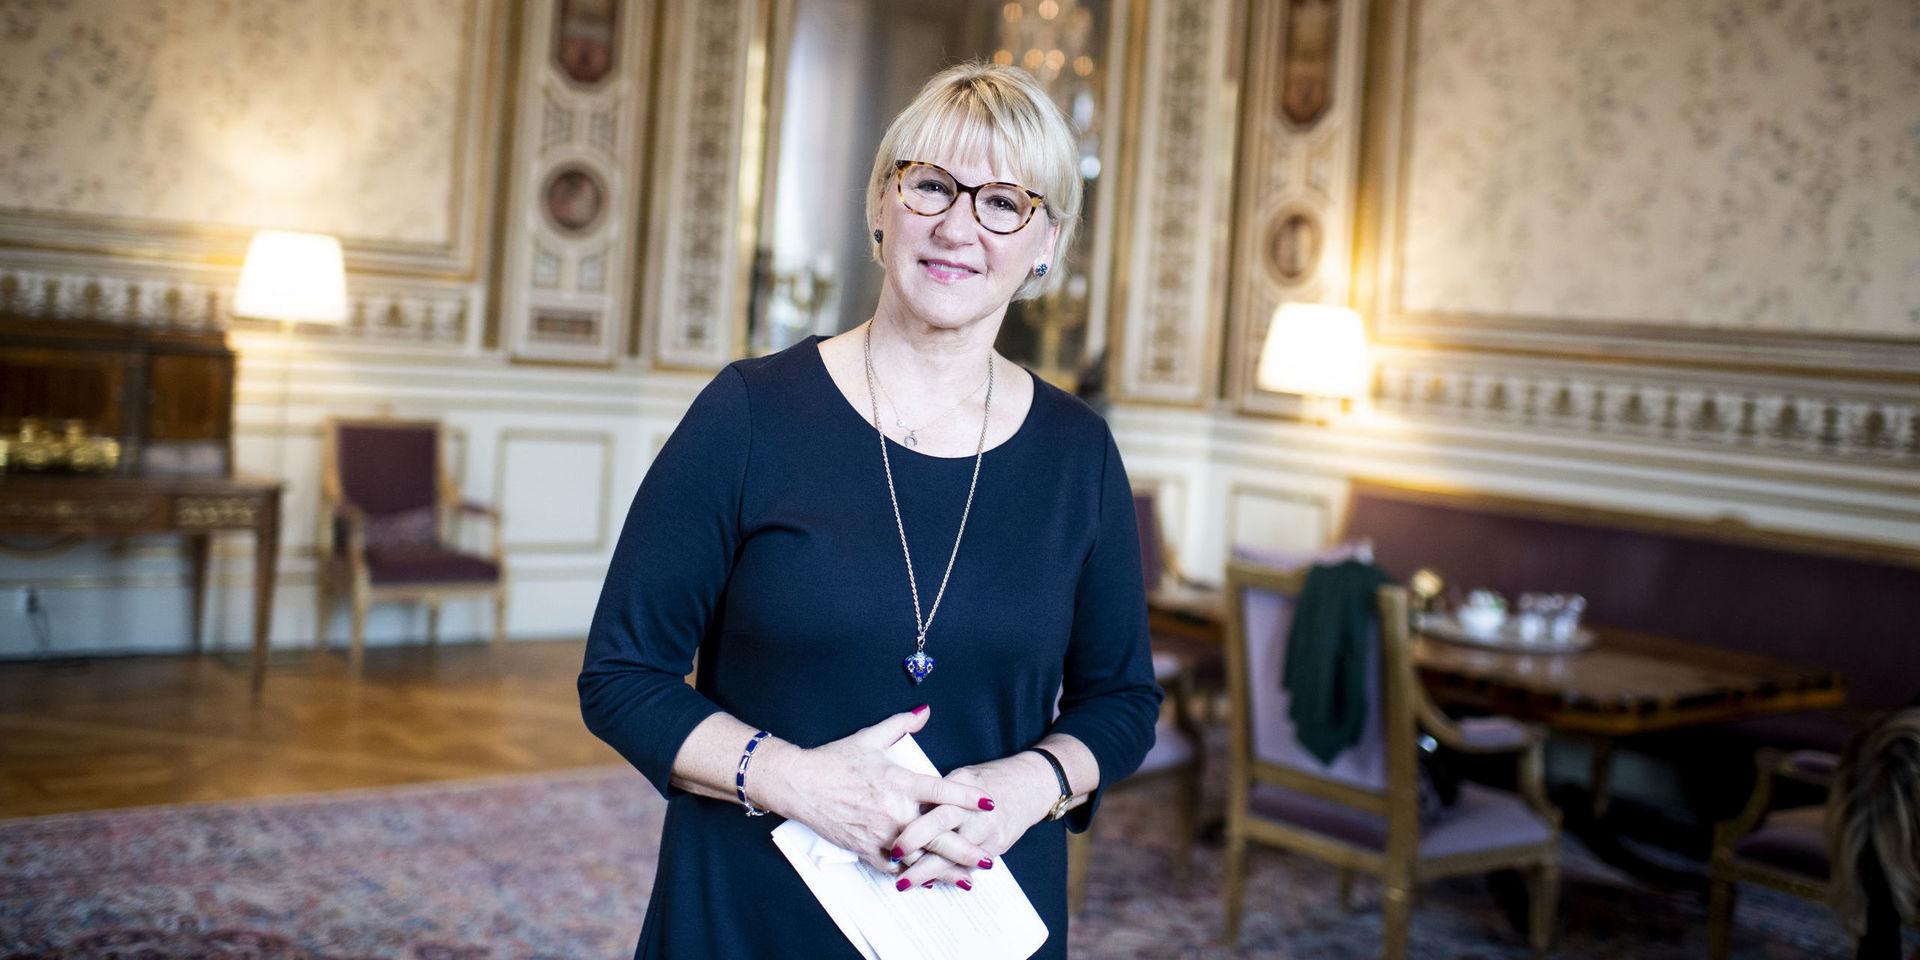 Margot Wallström meddelade nyligen att hon lämnar jobbet som utrikesminister och går i pension. Tillvaron i Arvfurstens palats ska bytas mot något helt annat. Nu fyller hon 65 år.